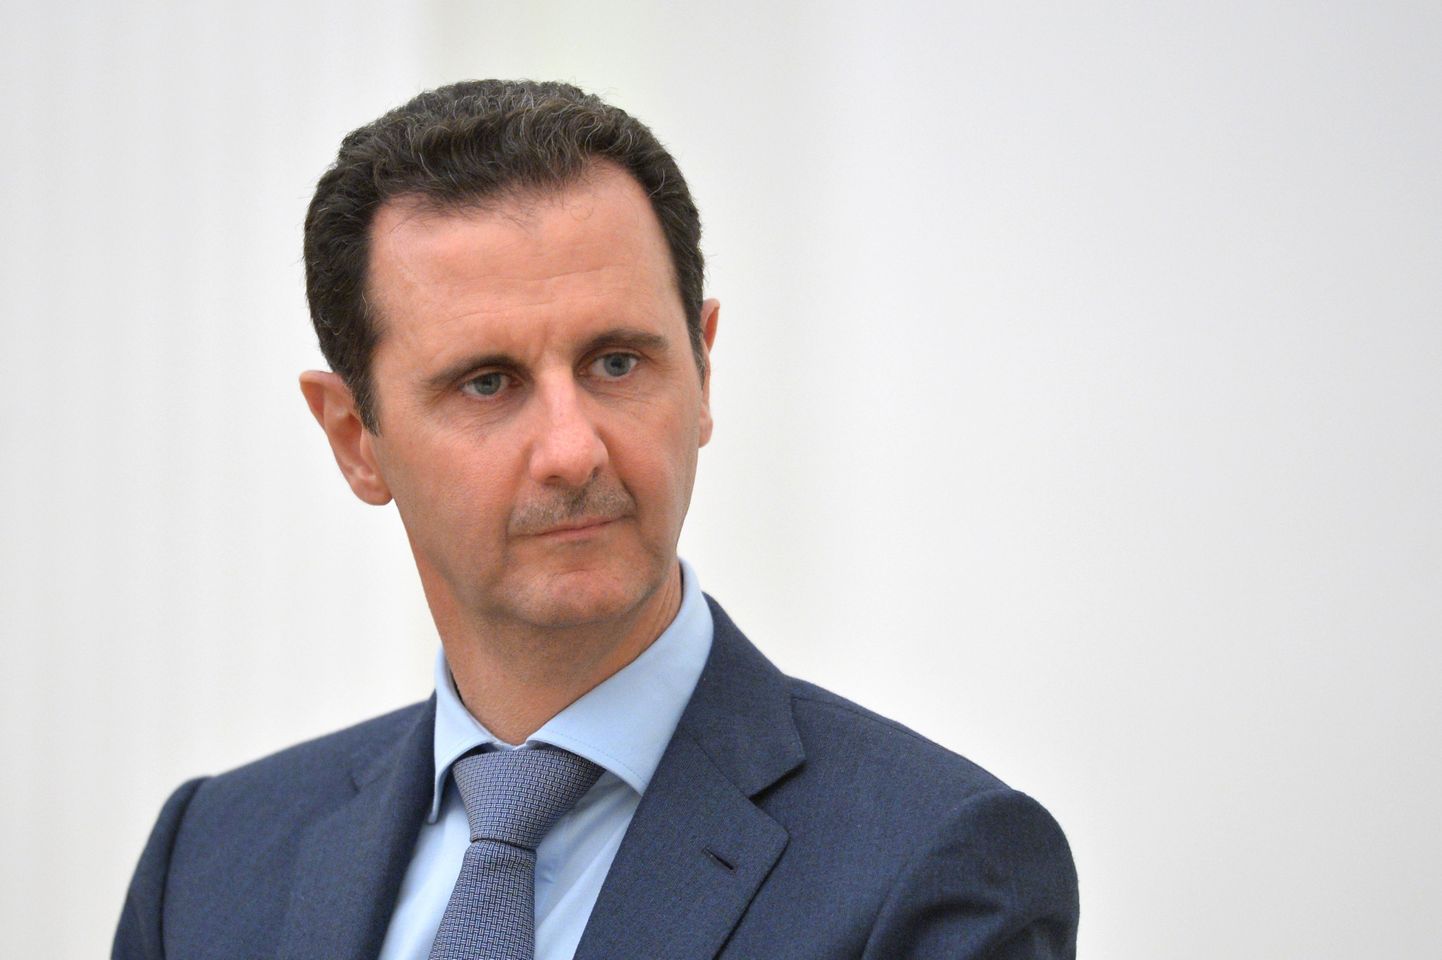 Süüria President Bashar al-Assad.